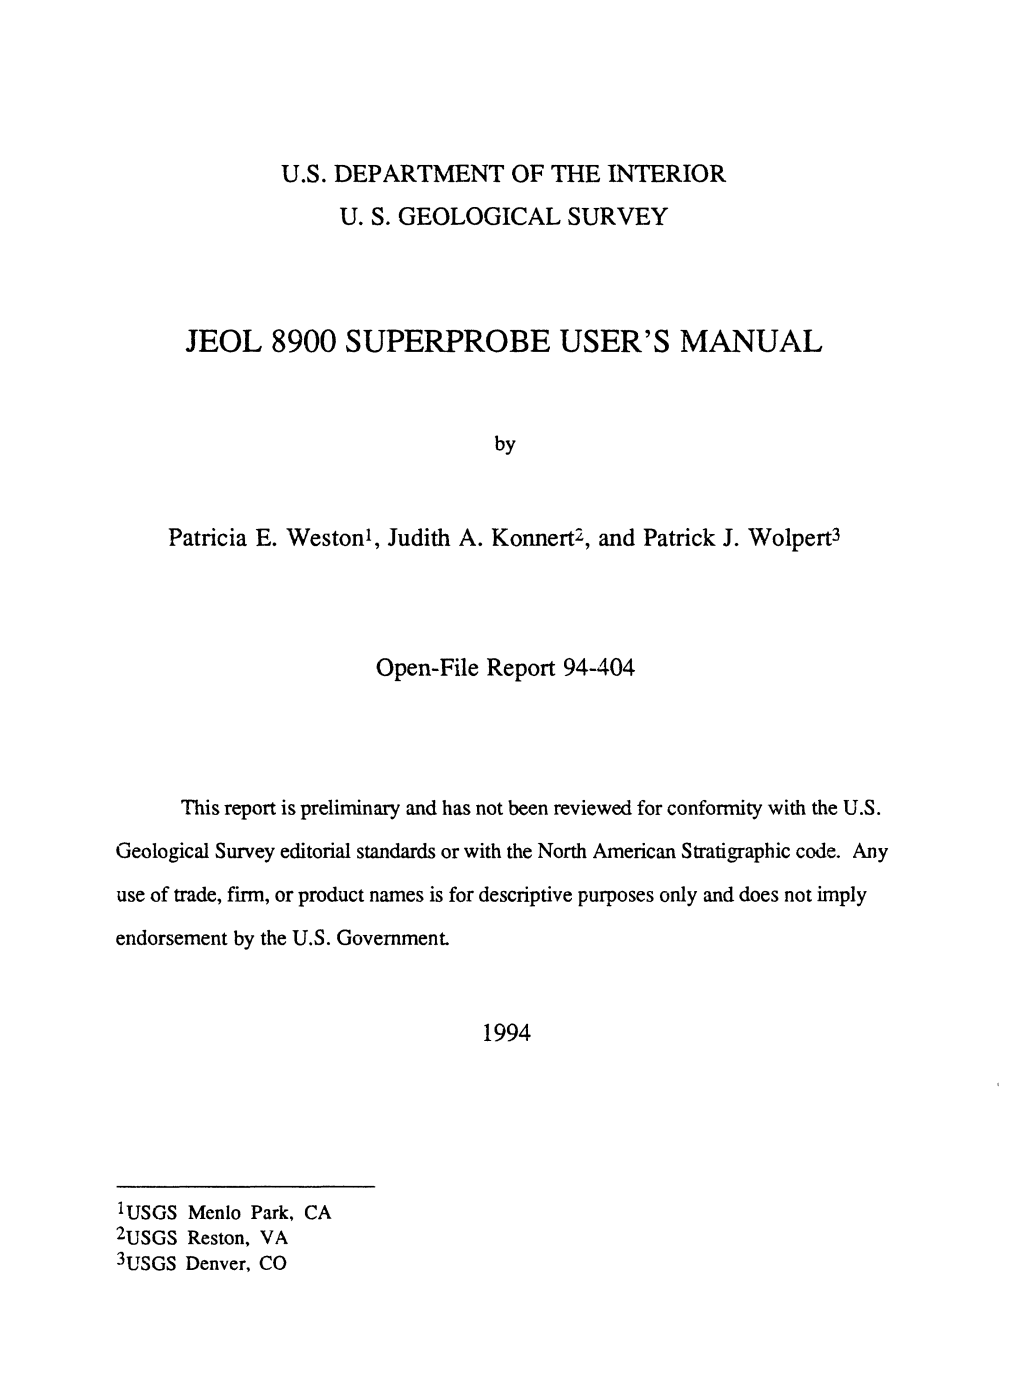 Jeol 8900 Superprobe User's Manual